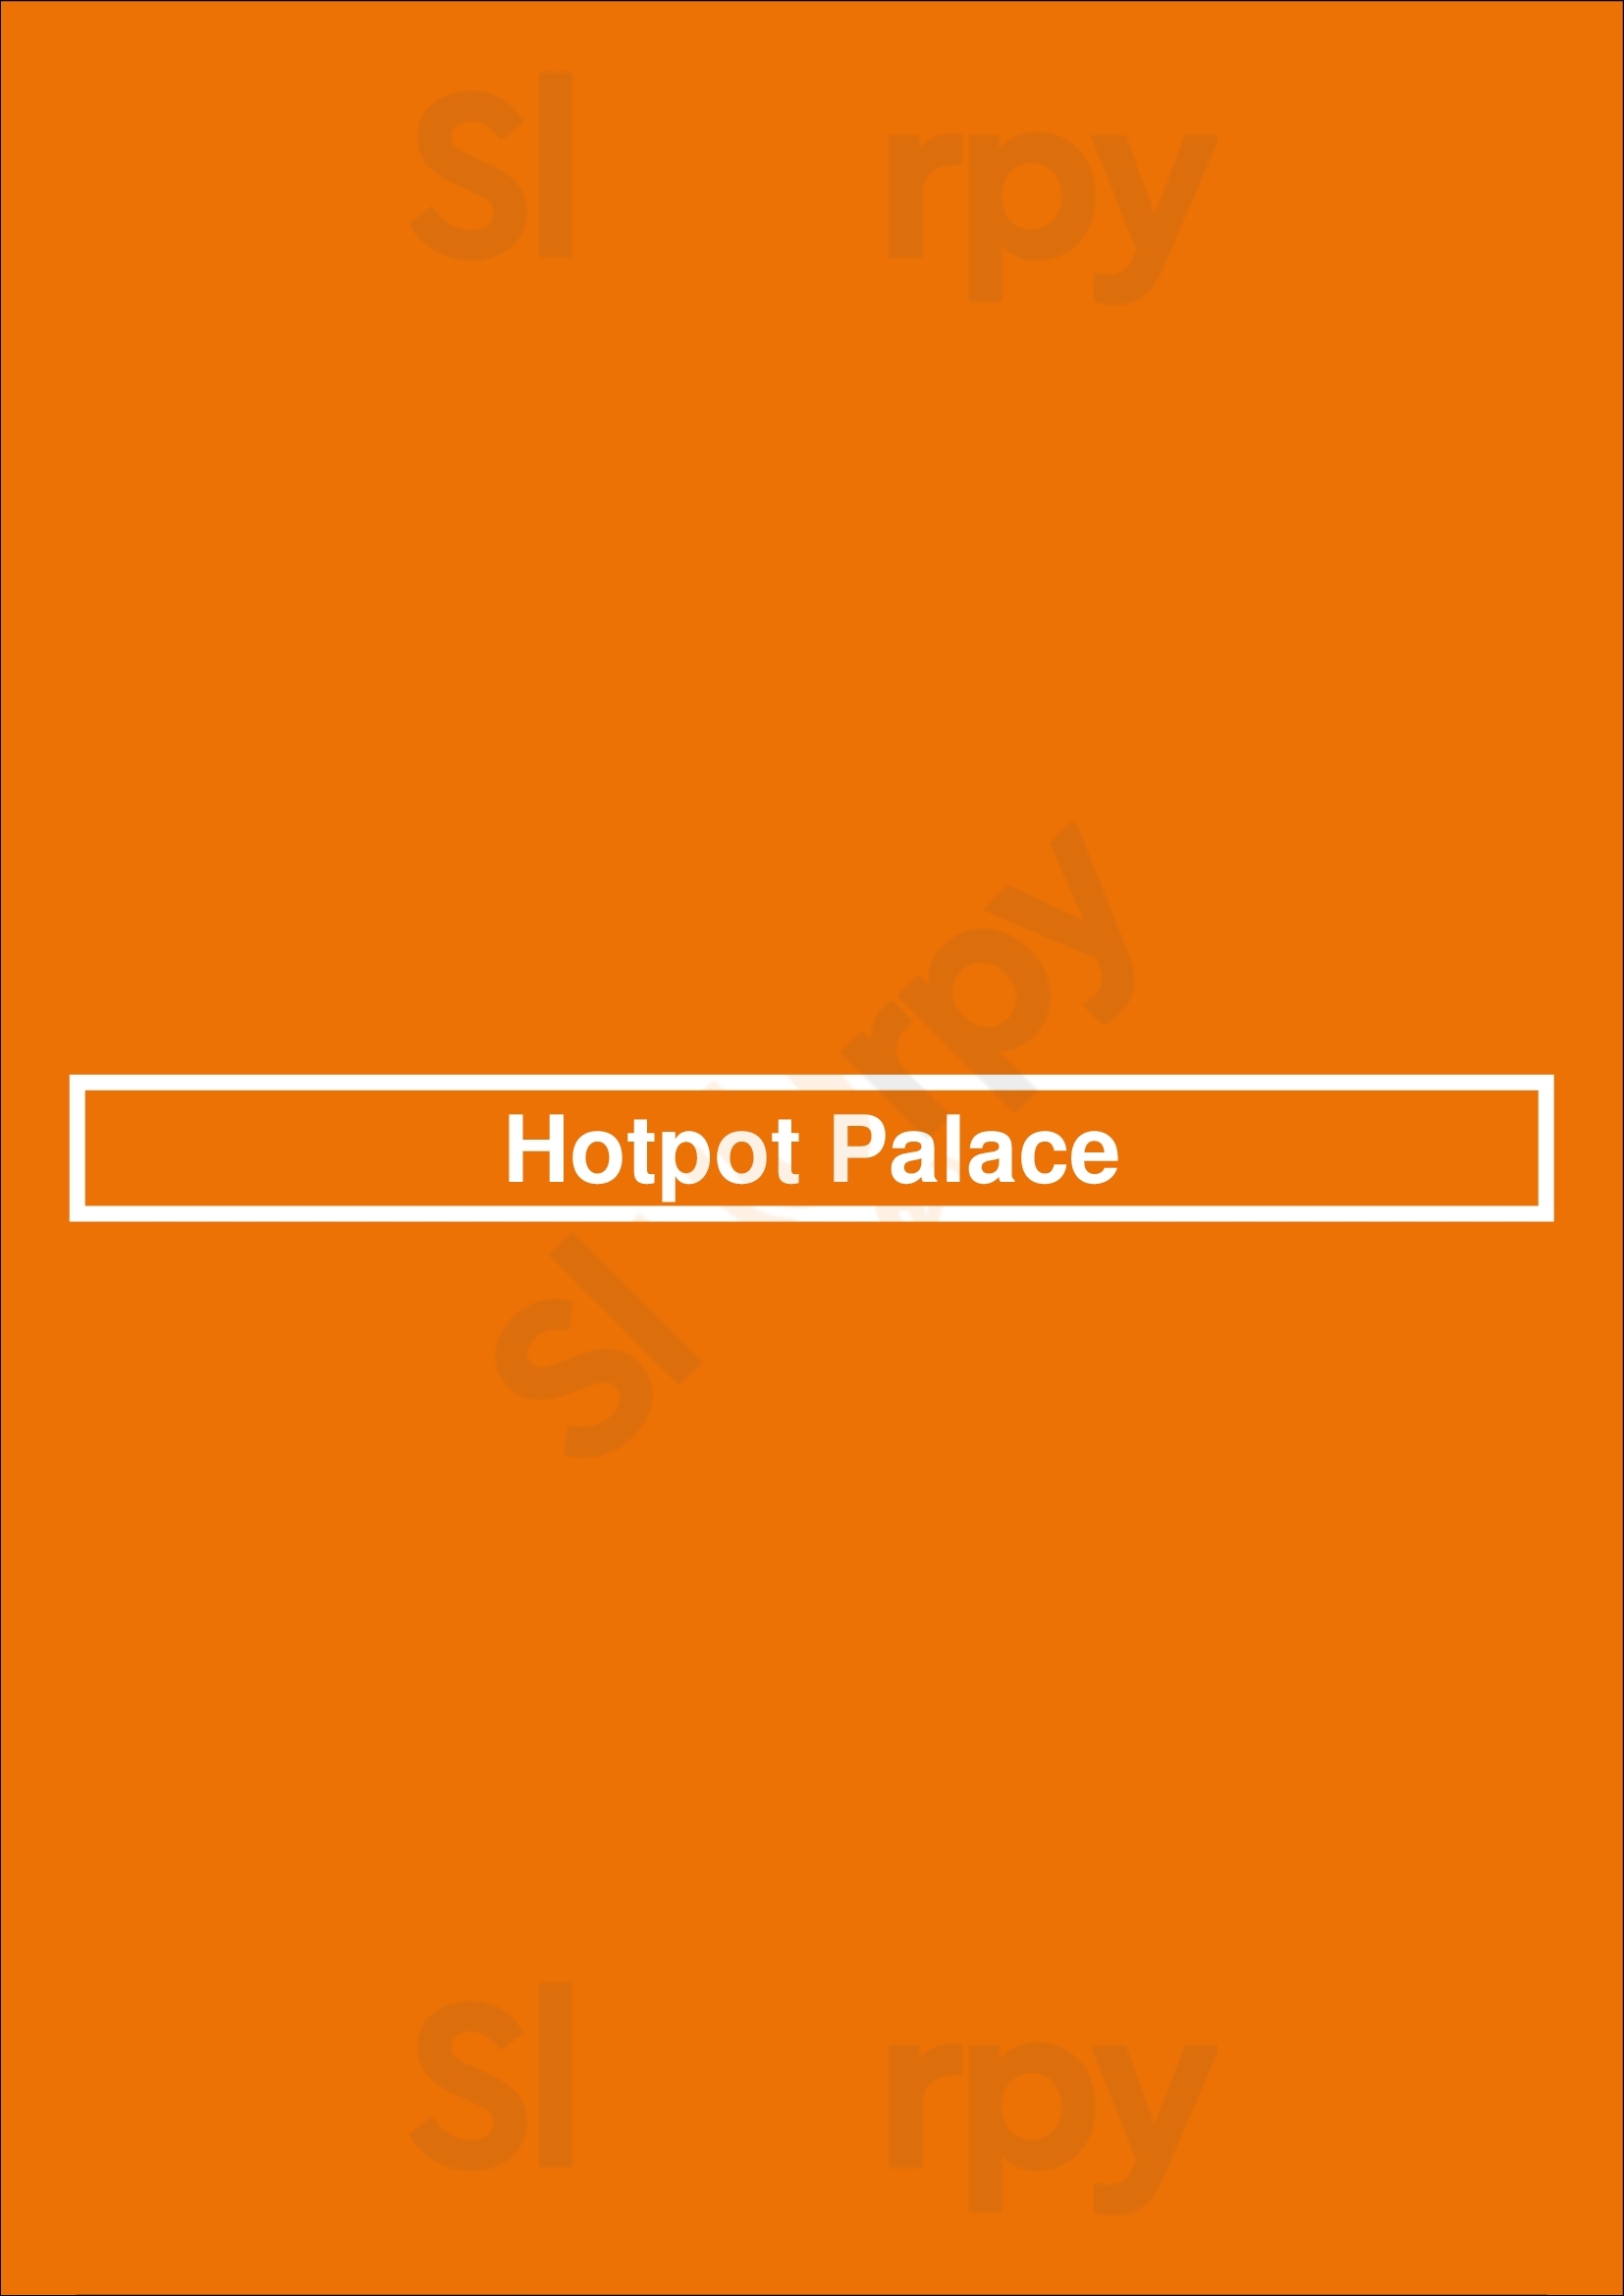 Hotpot Palace Richmond Menu - 1